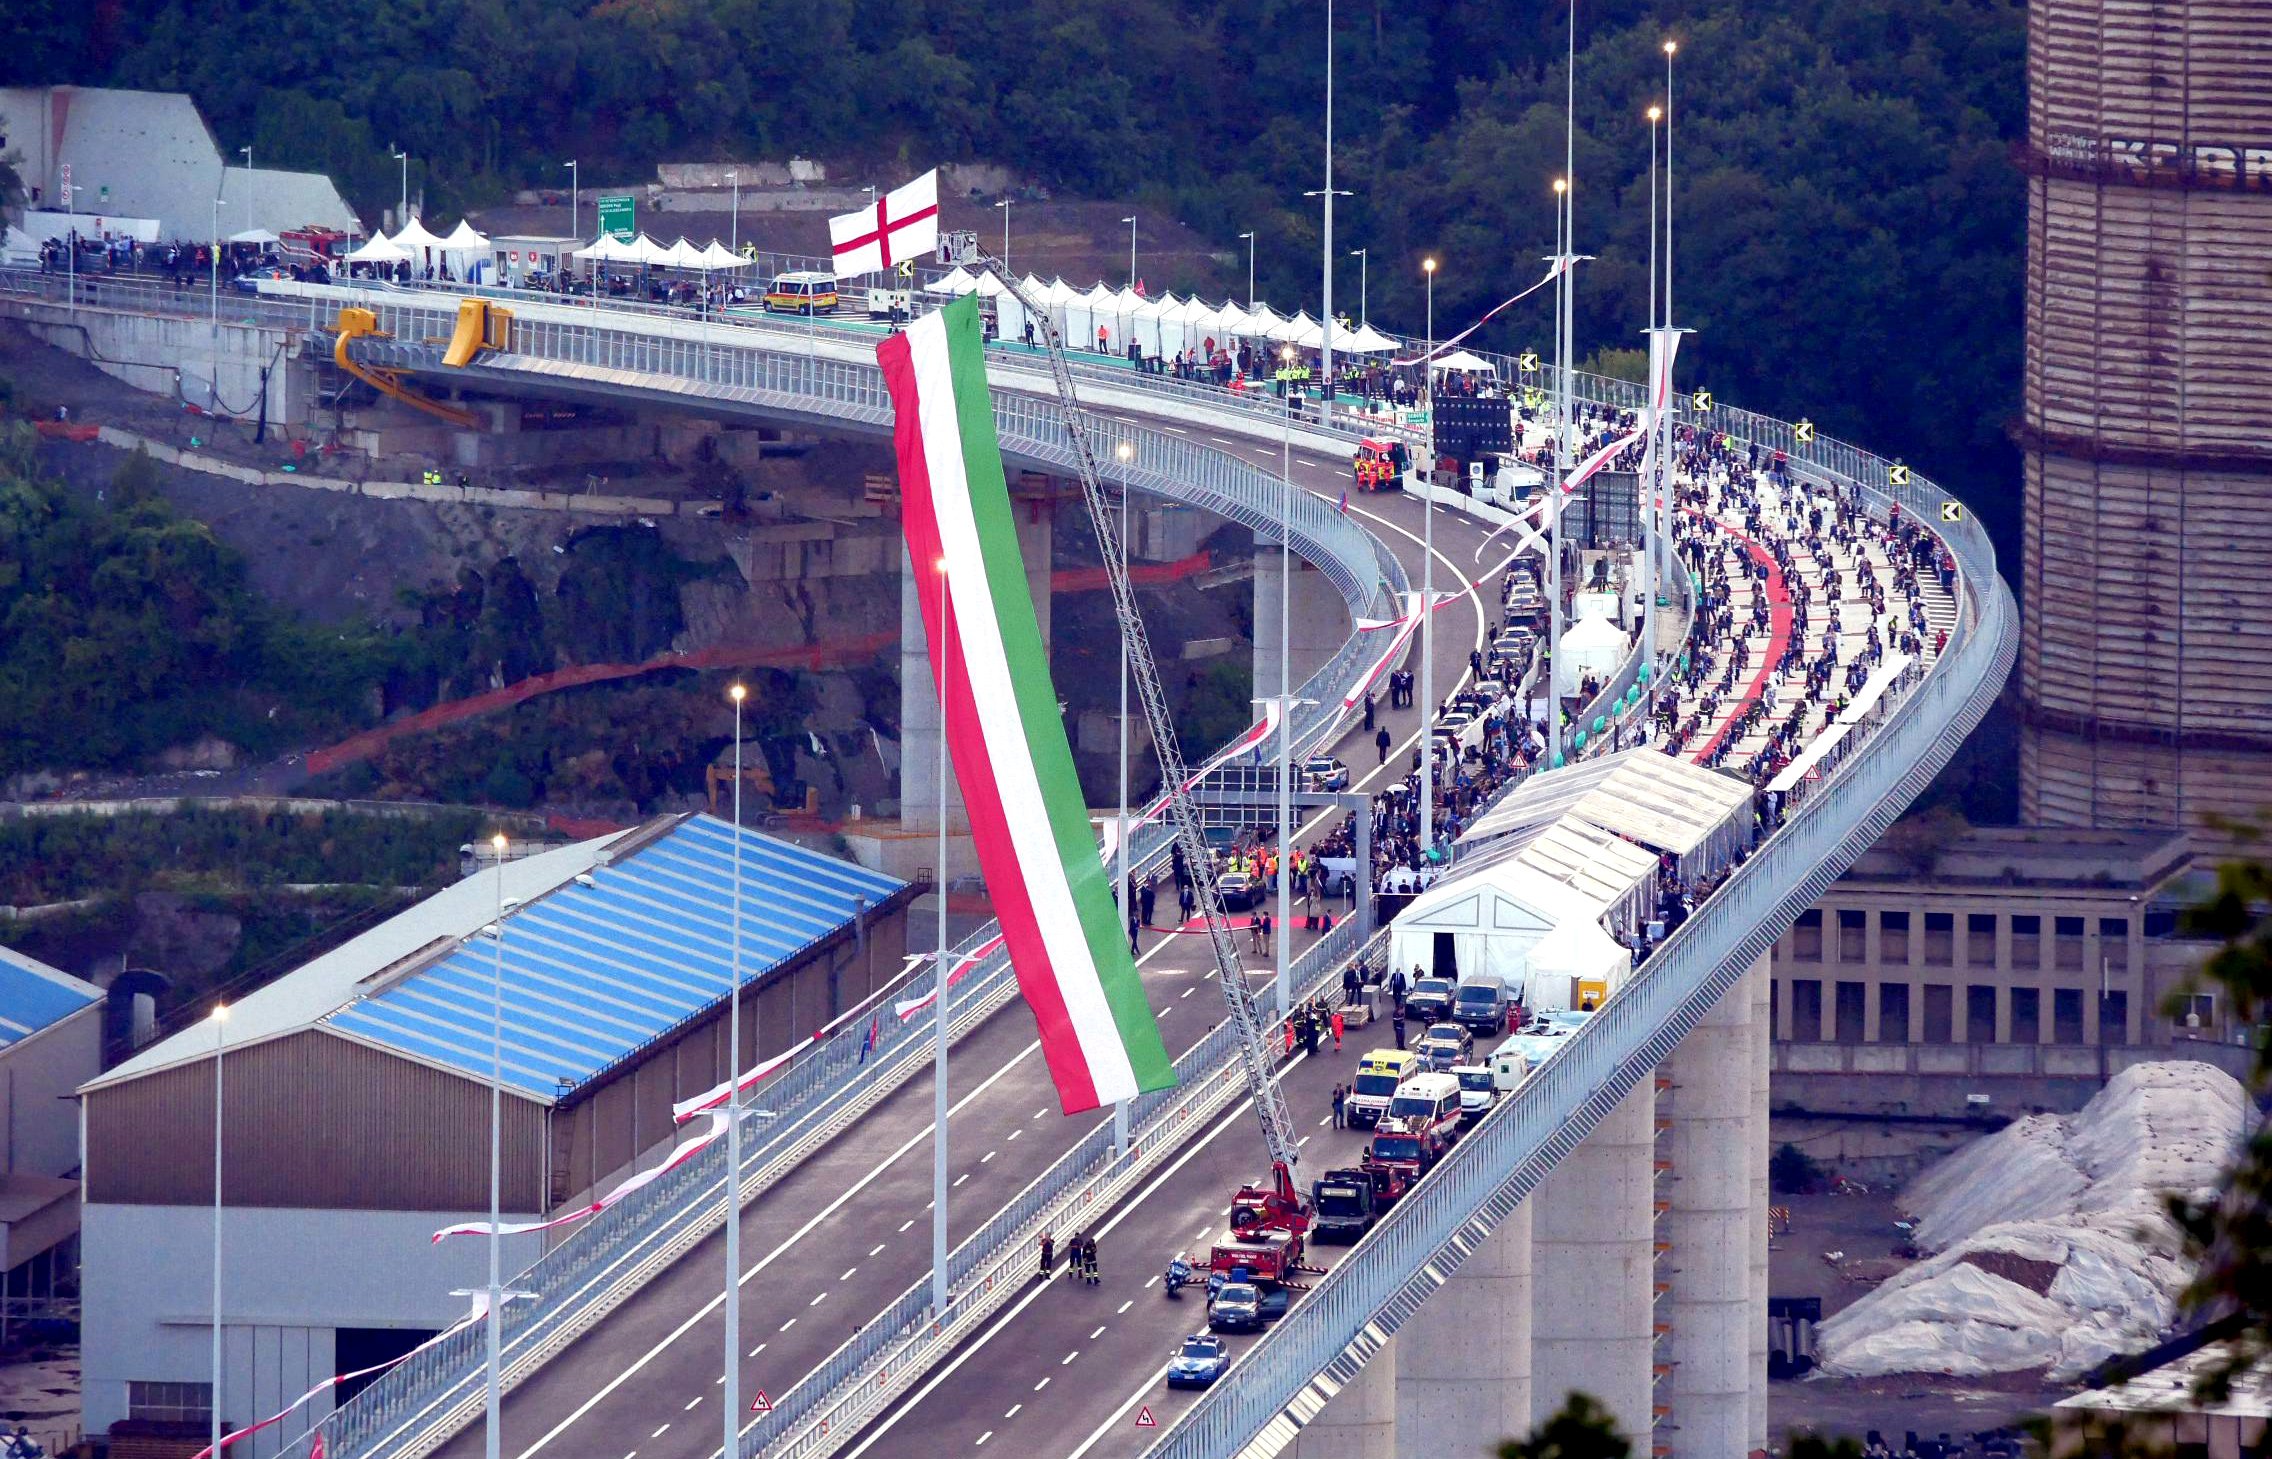 Eine geschwungene Brücke mit einer großen Menschenmenge darauf, die italienische Flagge wird von einem Kran gehisst, der an einem Feuerwehrauto befestigt ist